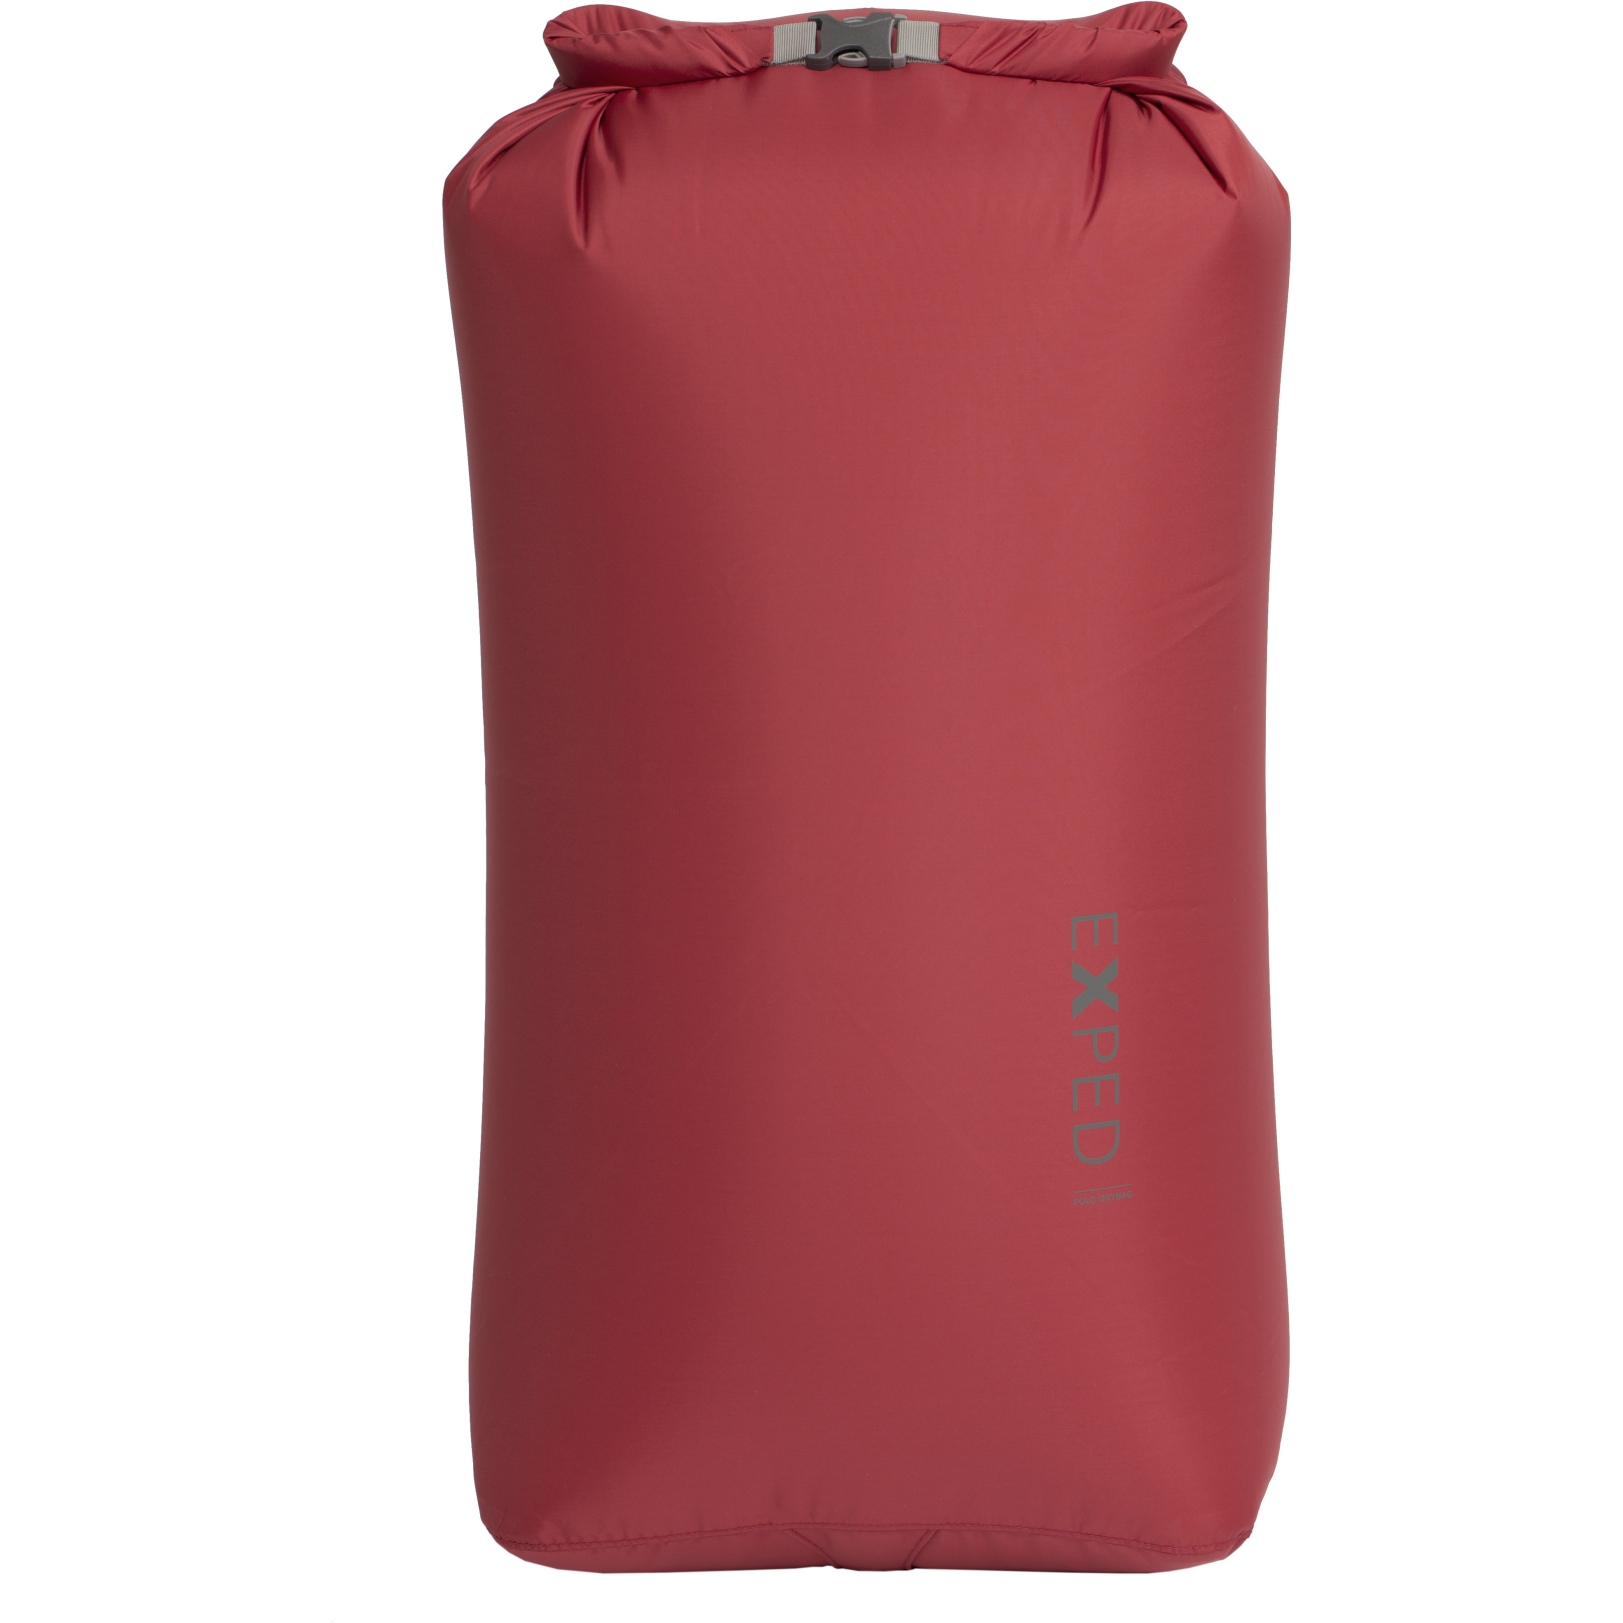 Produktbild von Exped Fold Drybag Packsack - XL - ruby